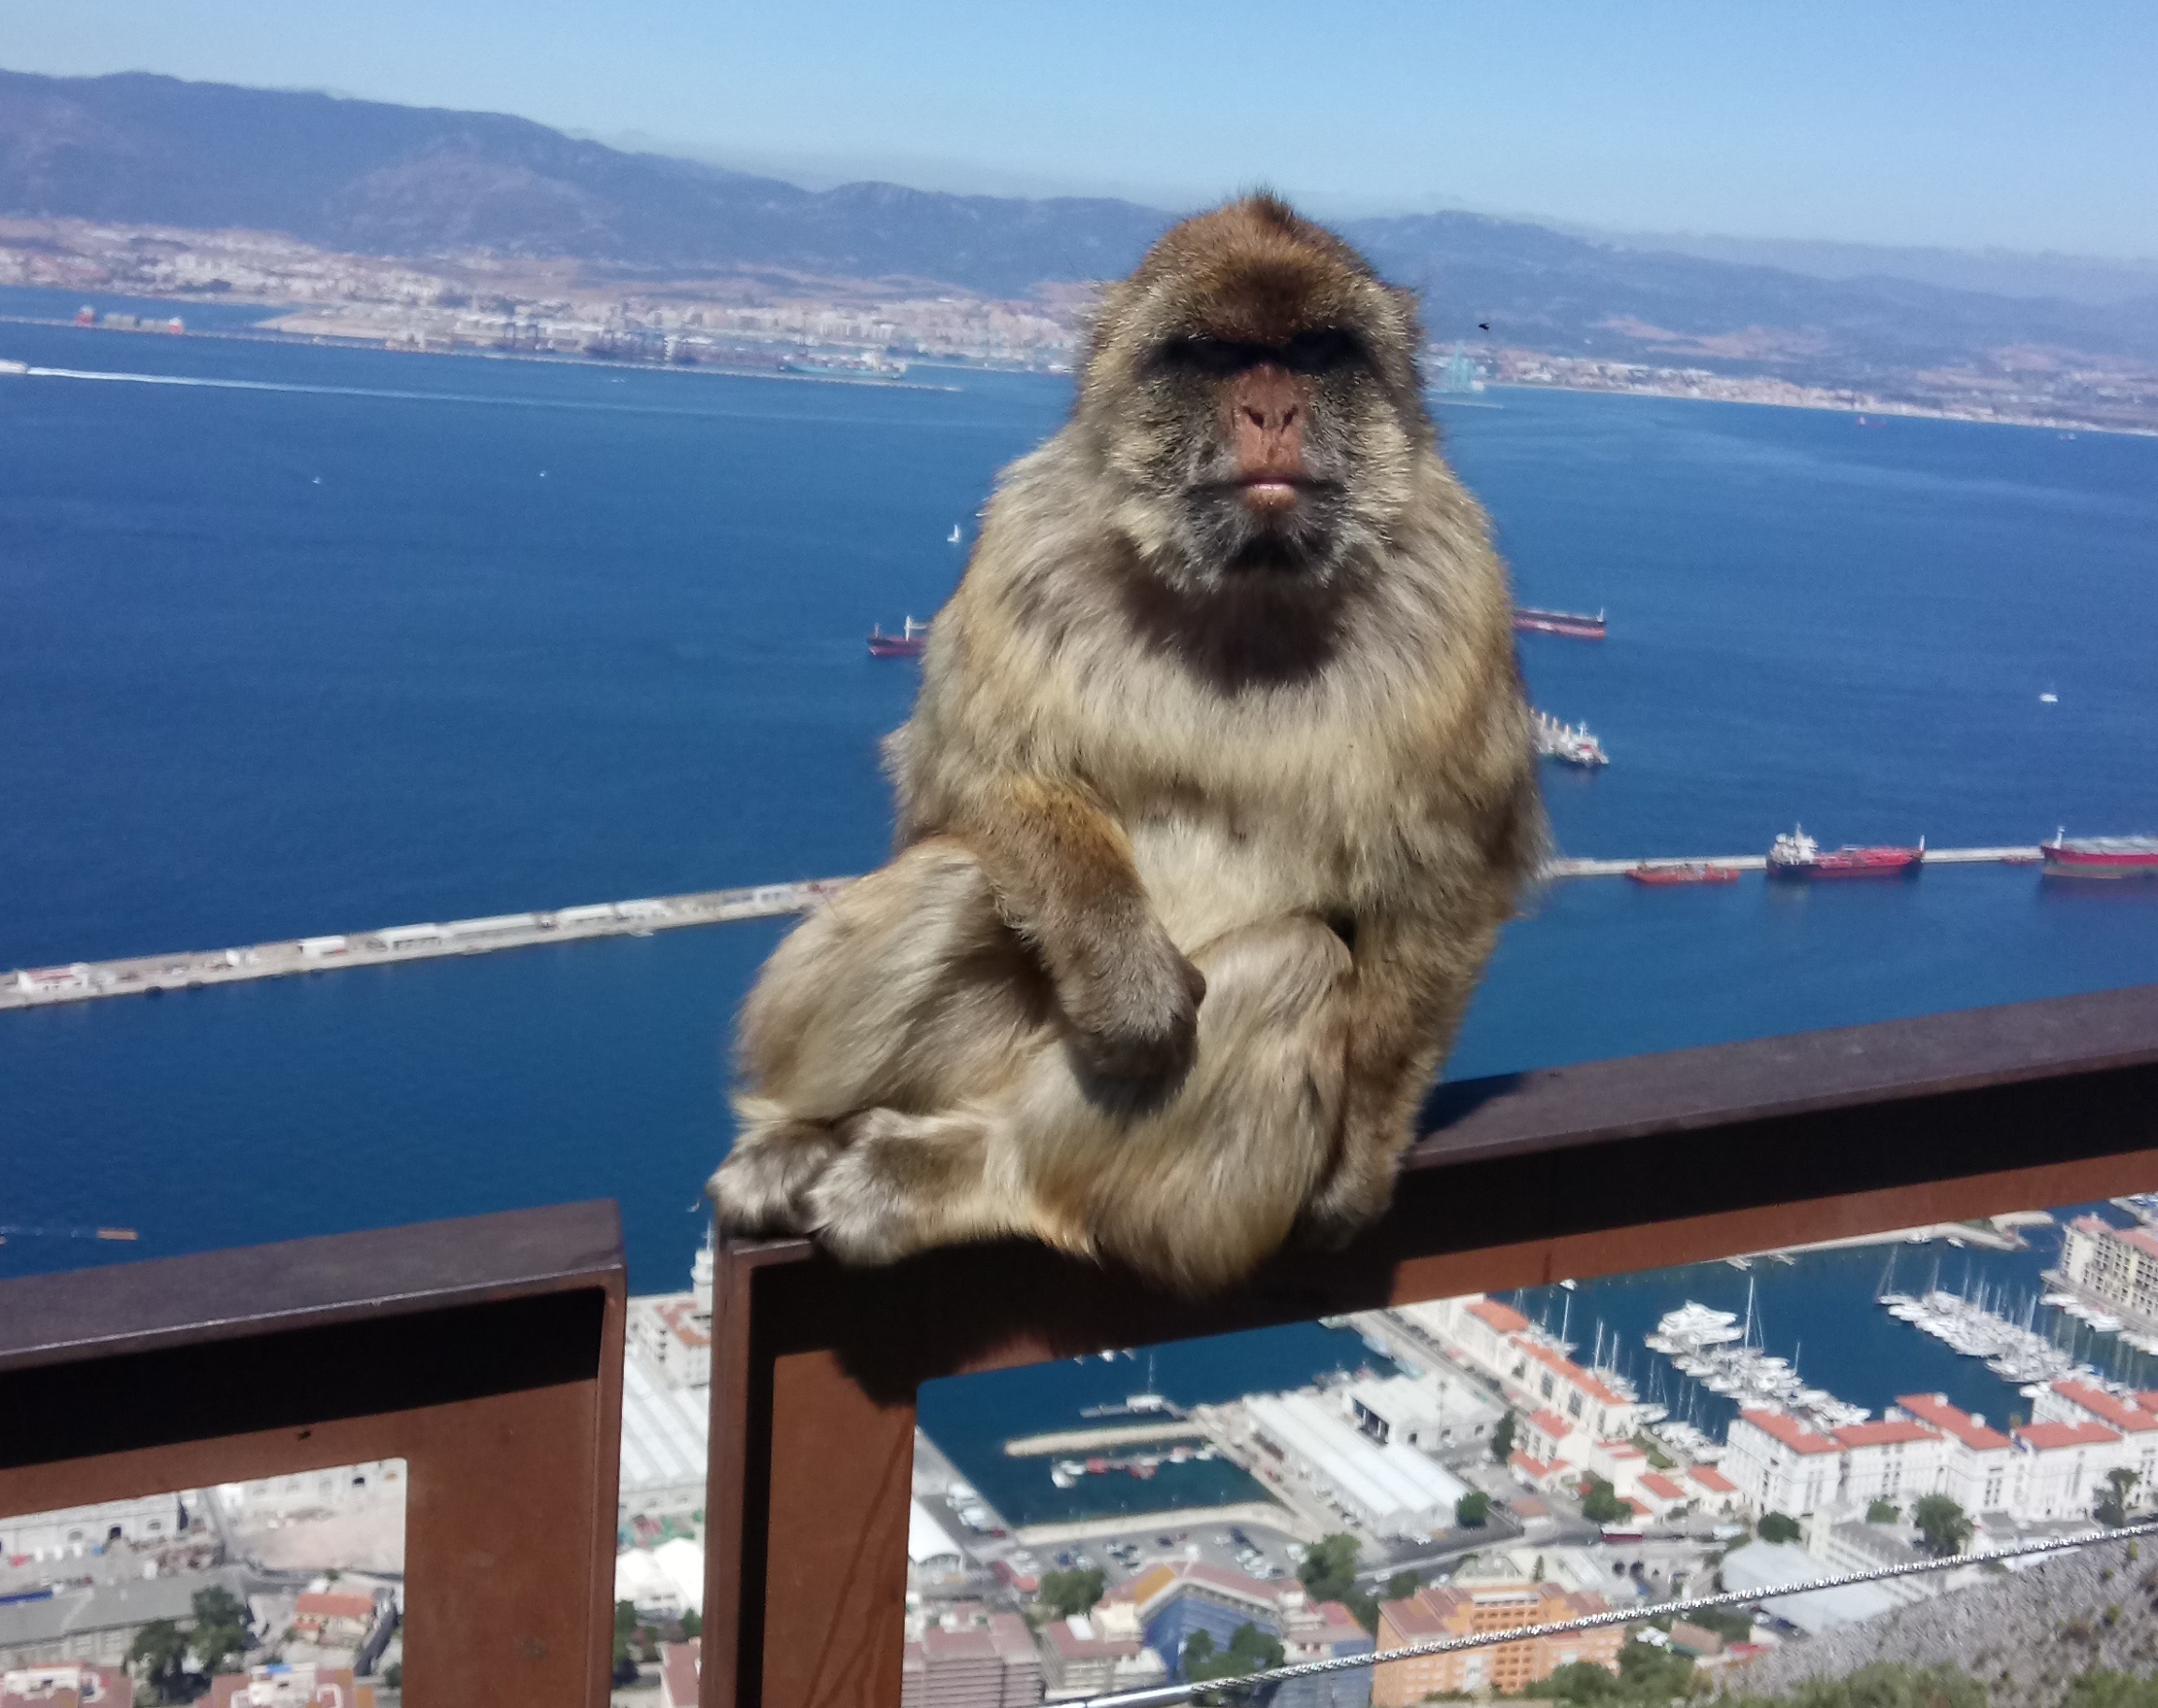 Wie kriegt mann eine authentischer Eindruck von Gibraltar?